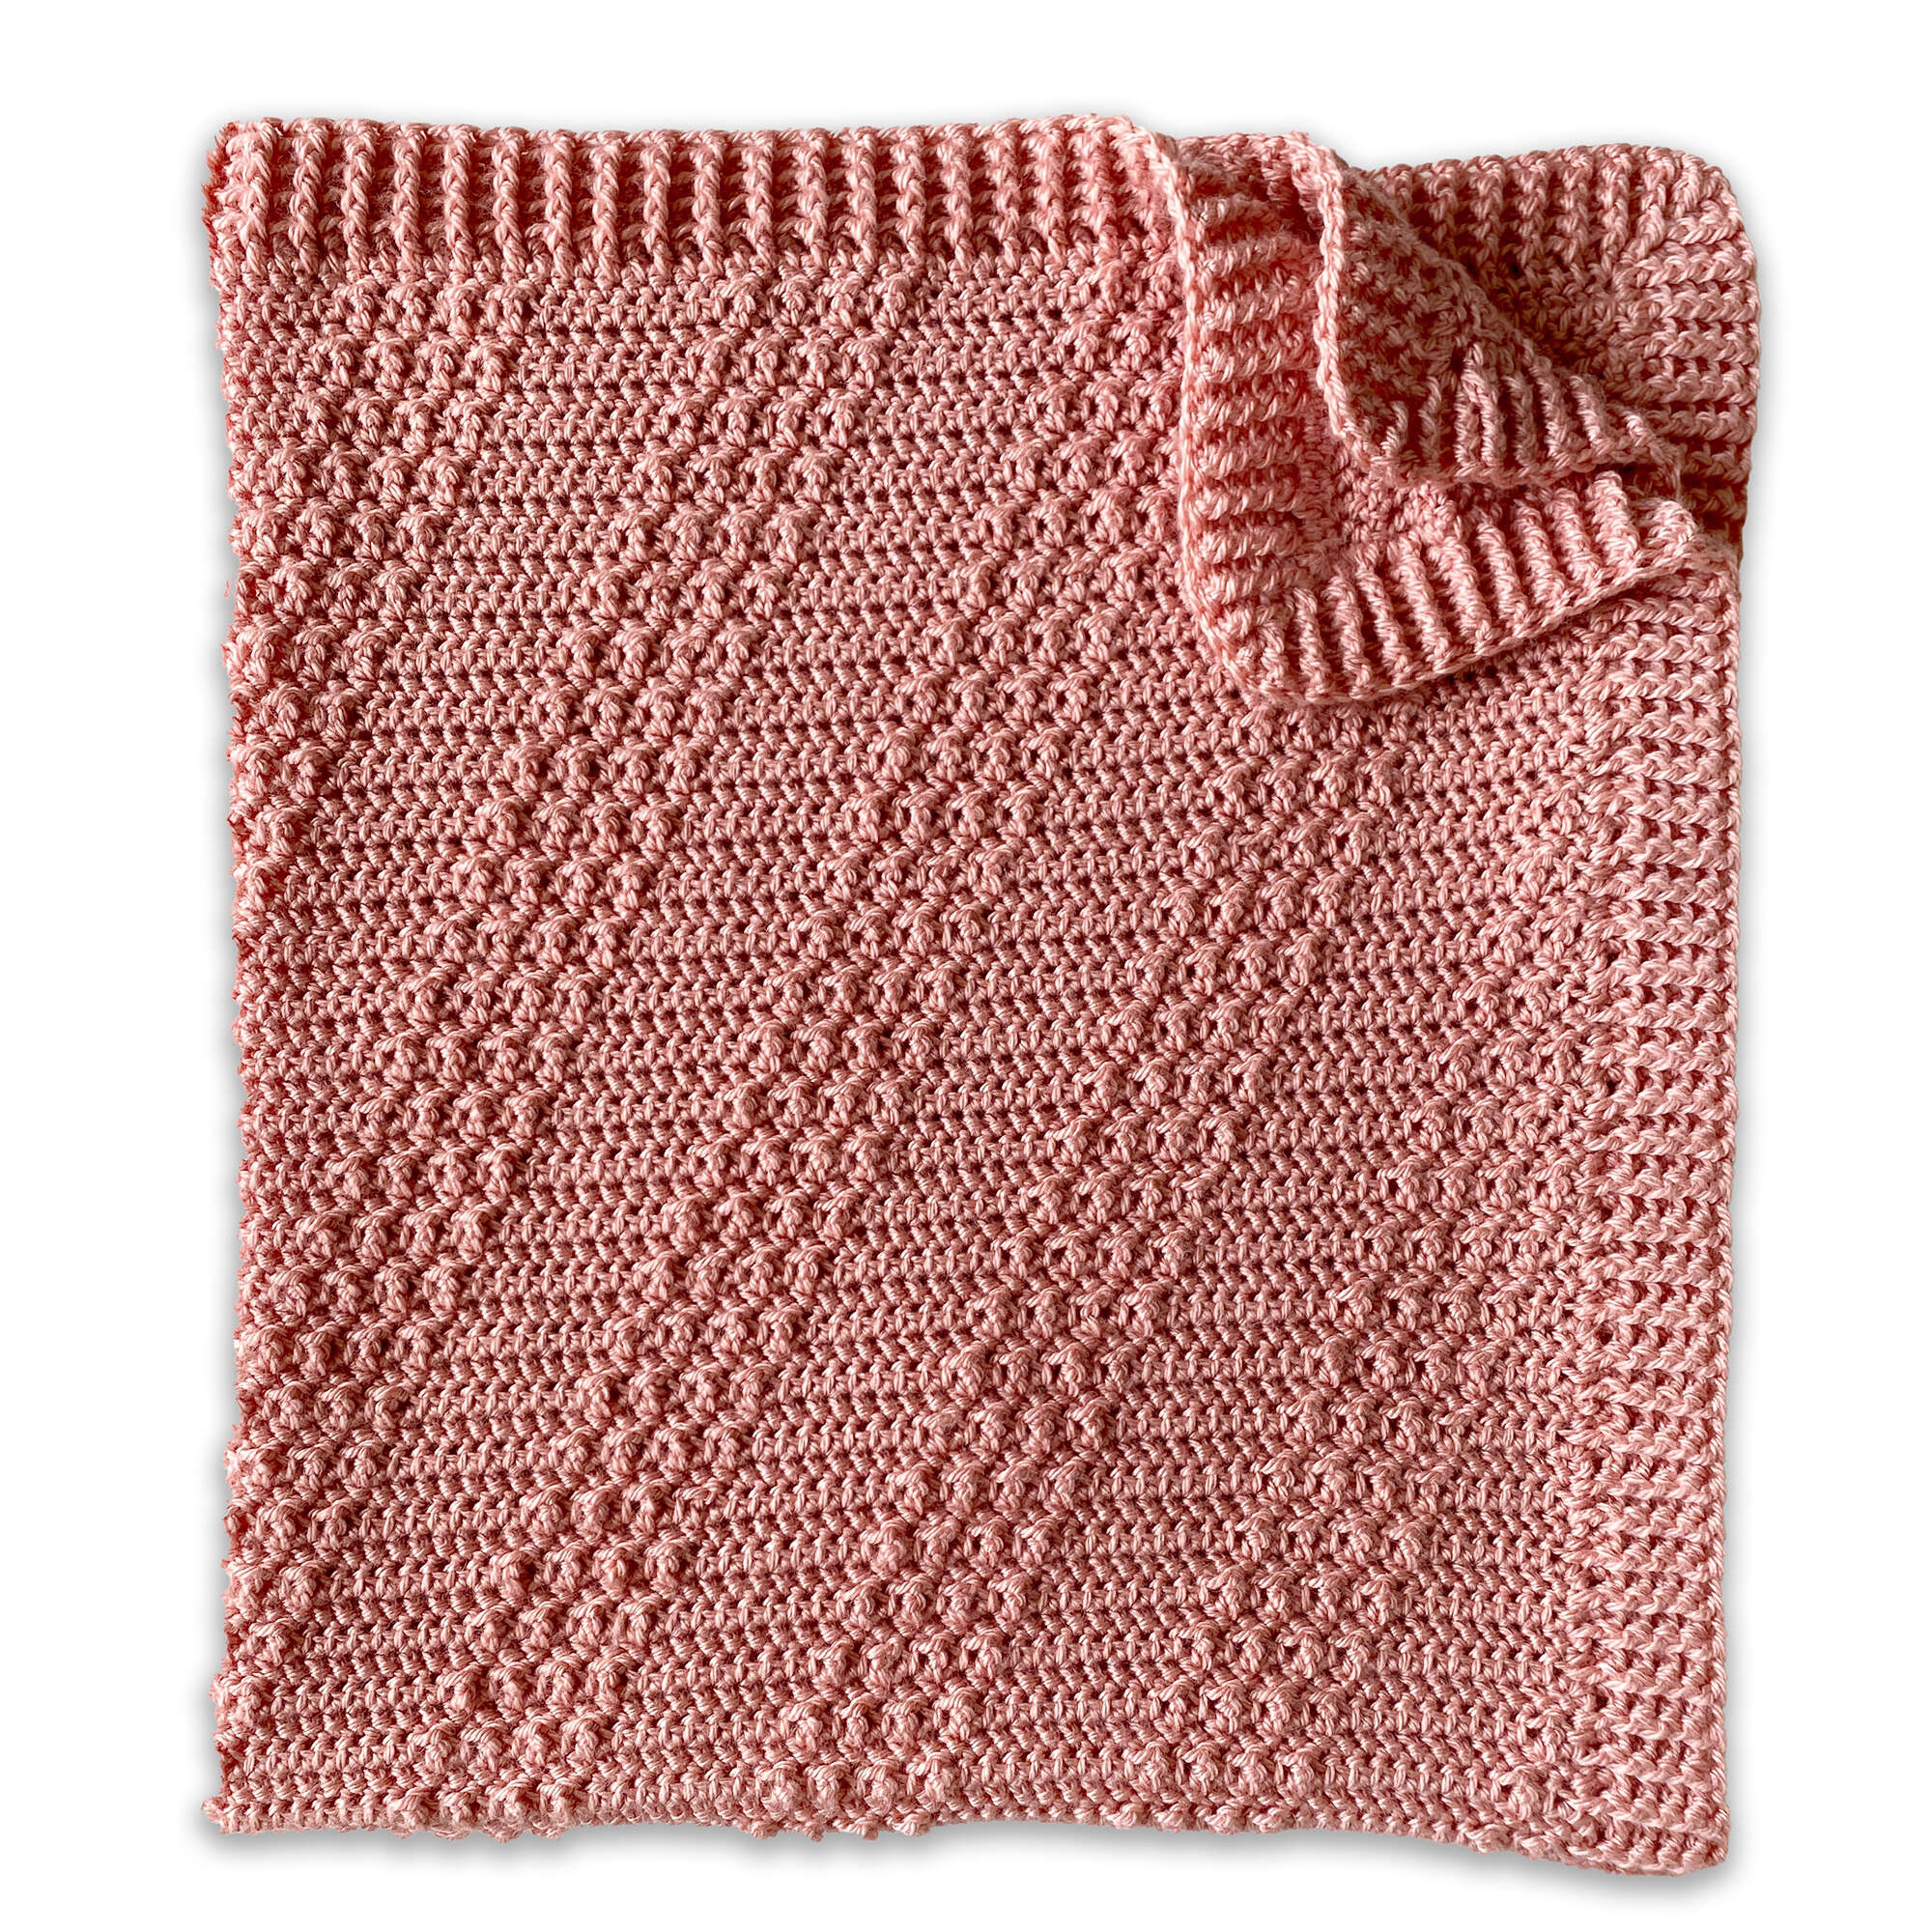 Bernat Crochet Fruity Stripes Crochet Baby Blanket Pattern